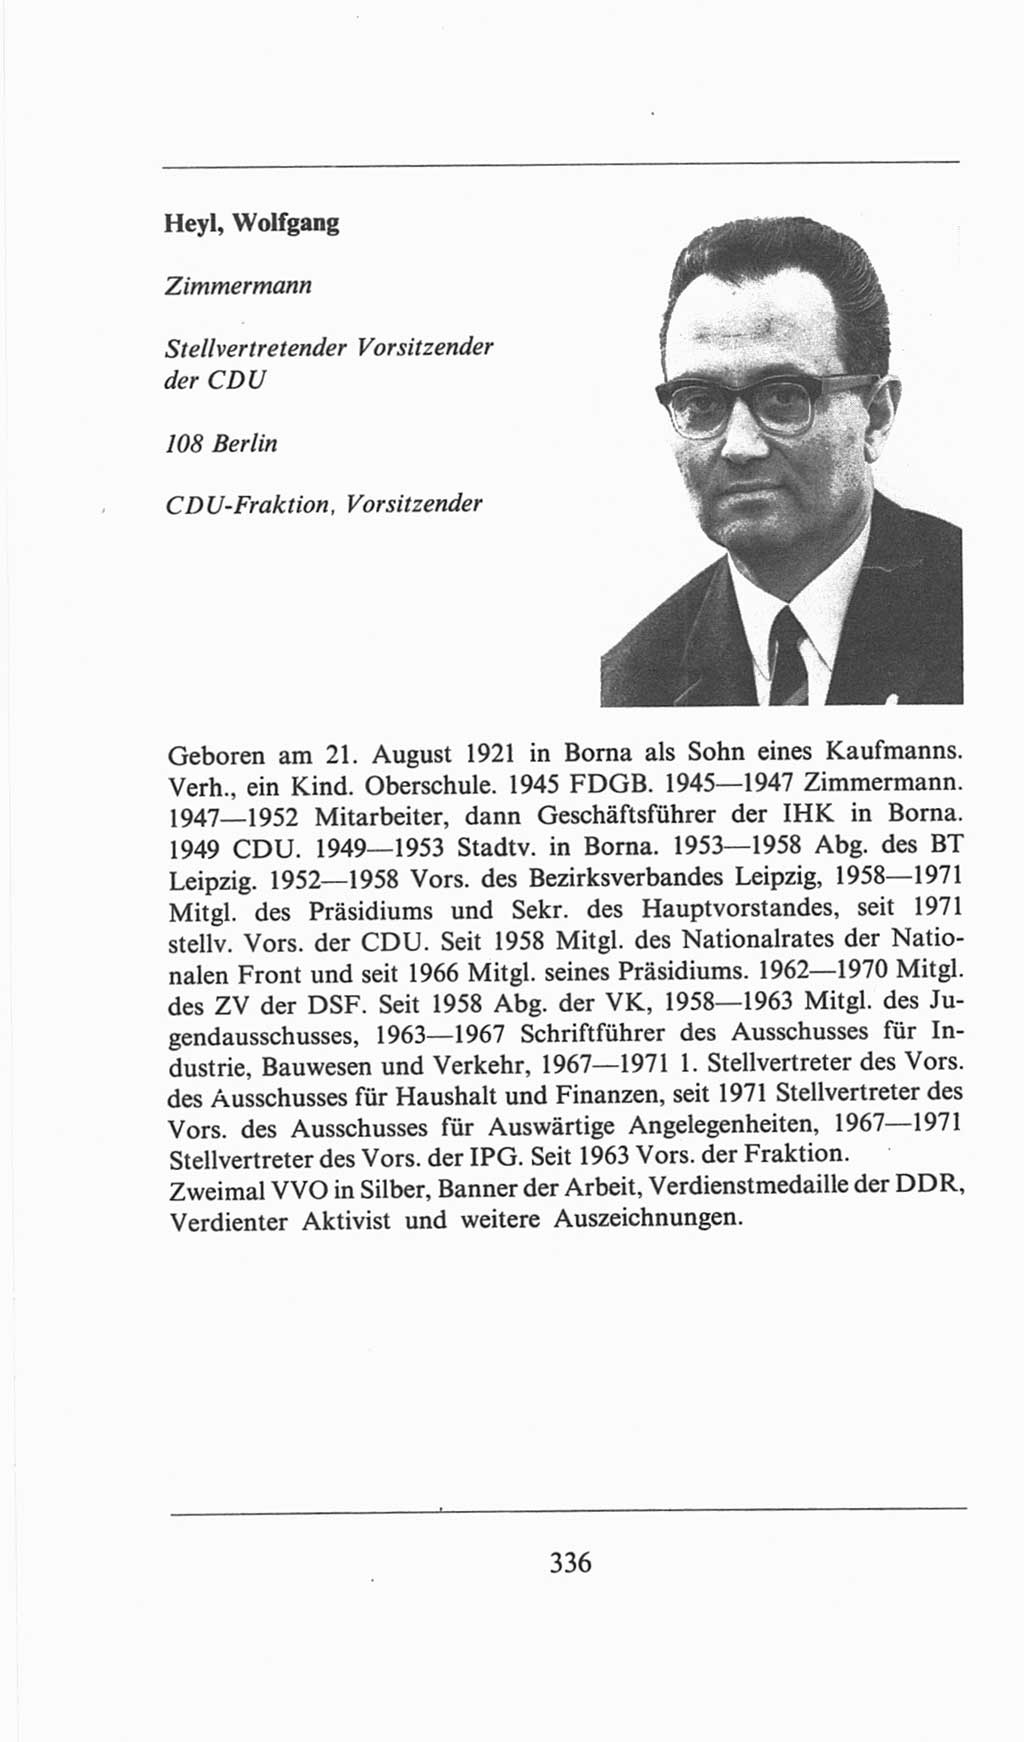 Volkskammer (VK) der Deutschen Demokratischen Republik (DDR), 6. Wahlperiode 1971-1976, Seite 336 (VK. DDR 6. WP. 1971-1976, S. 336)